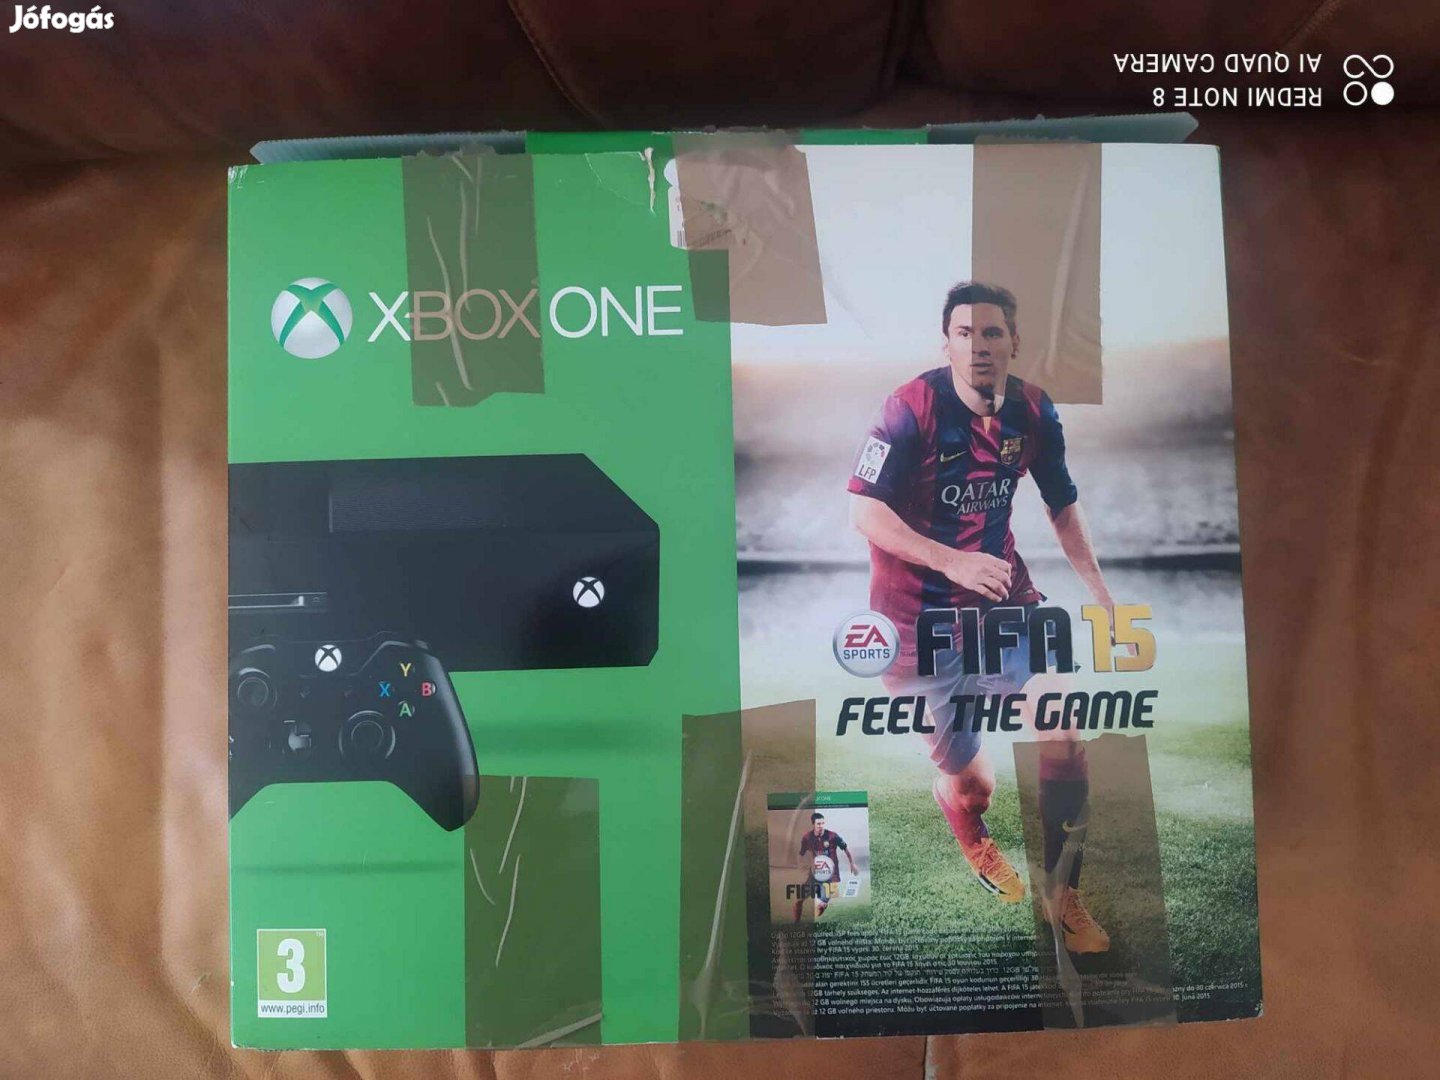 Xbox One Vezeték nélküli kontrollerrel